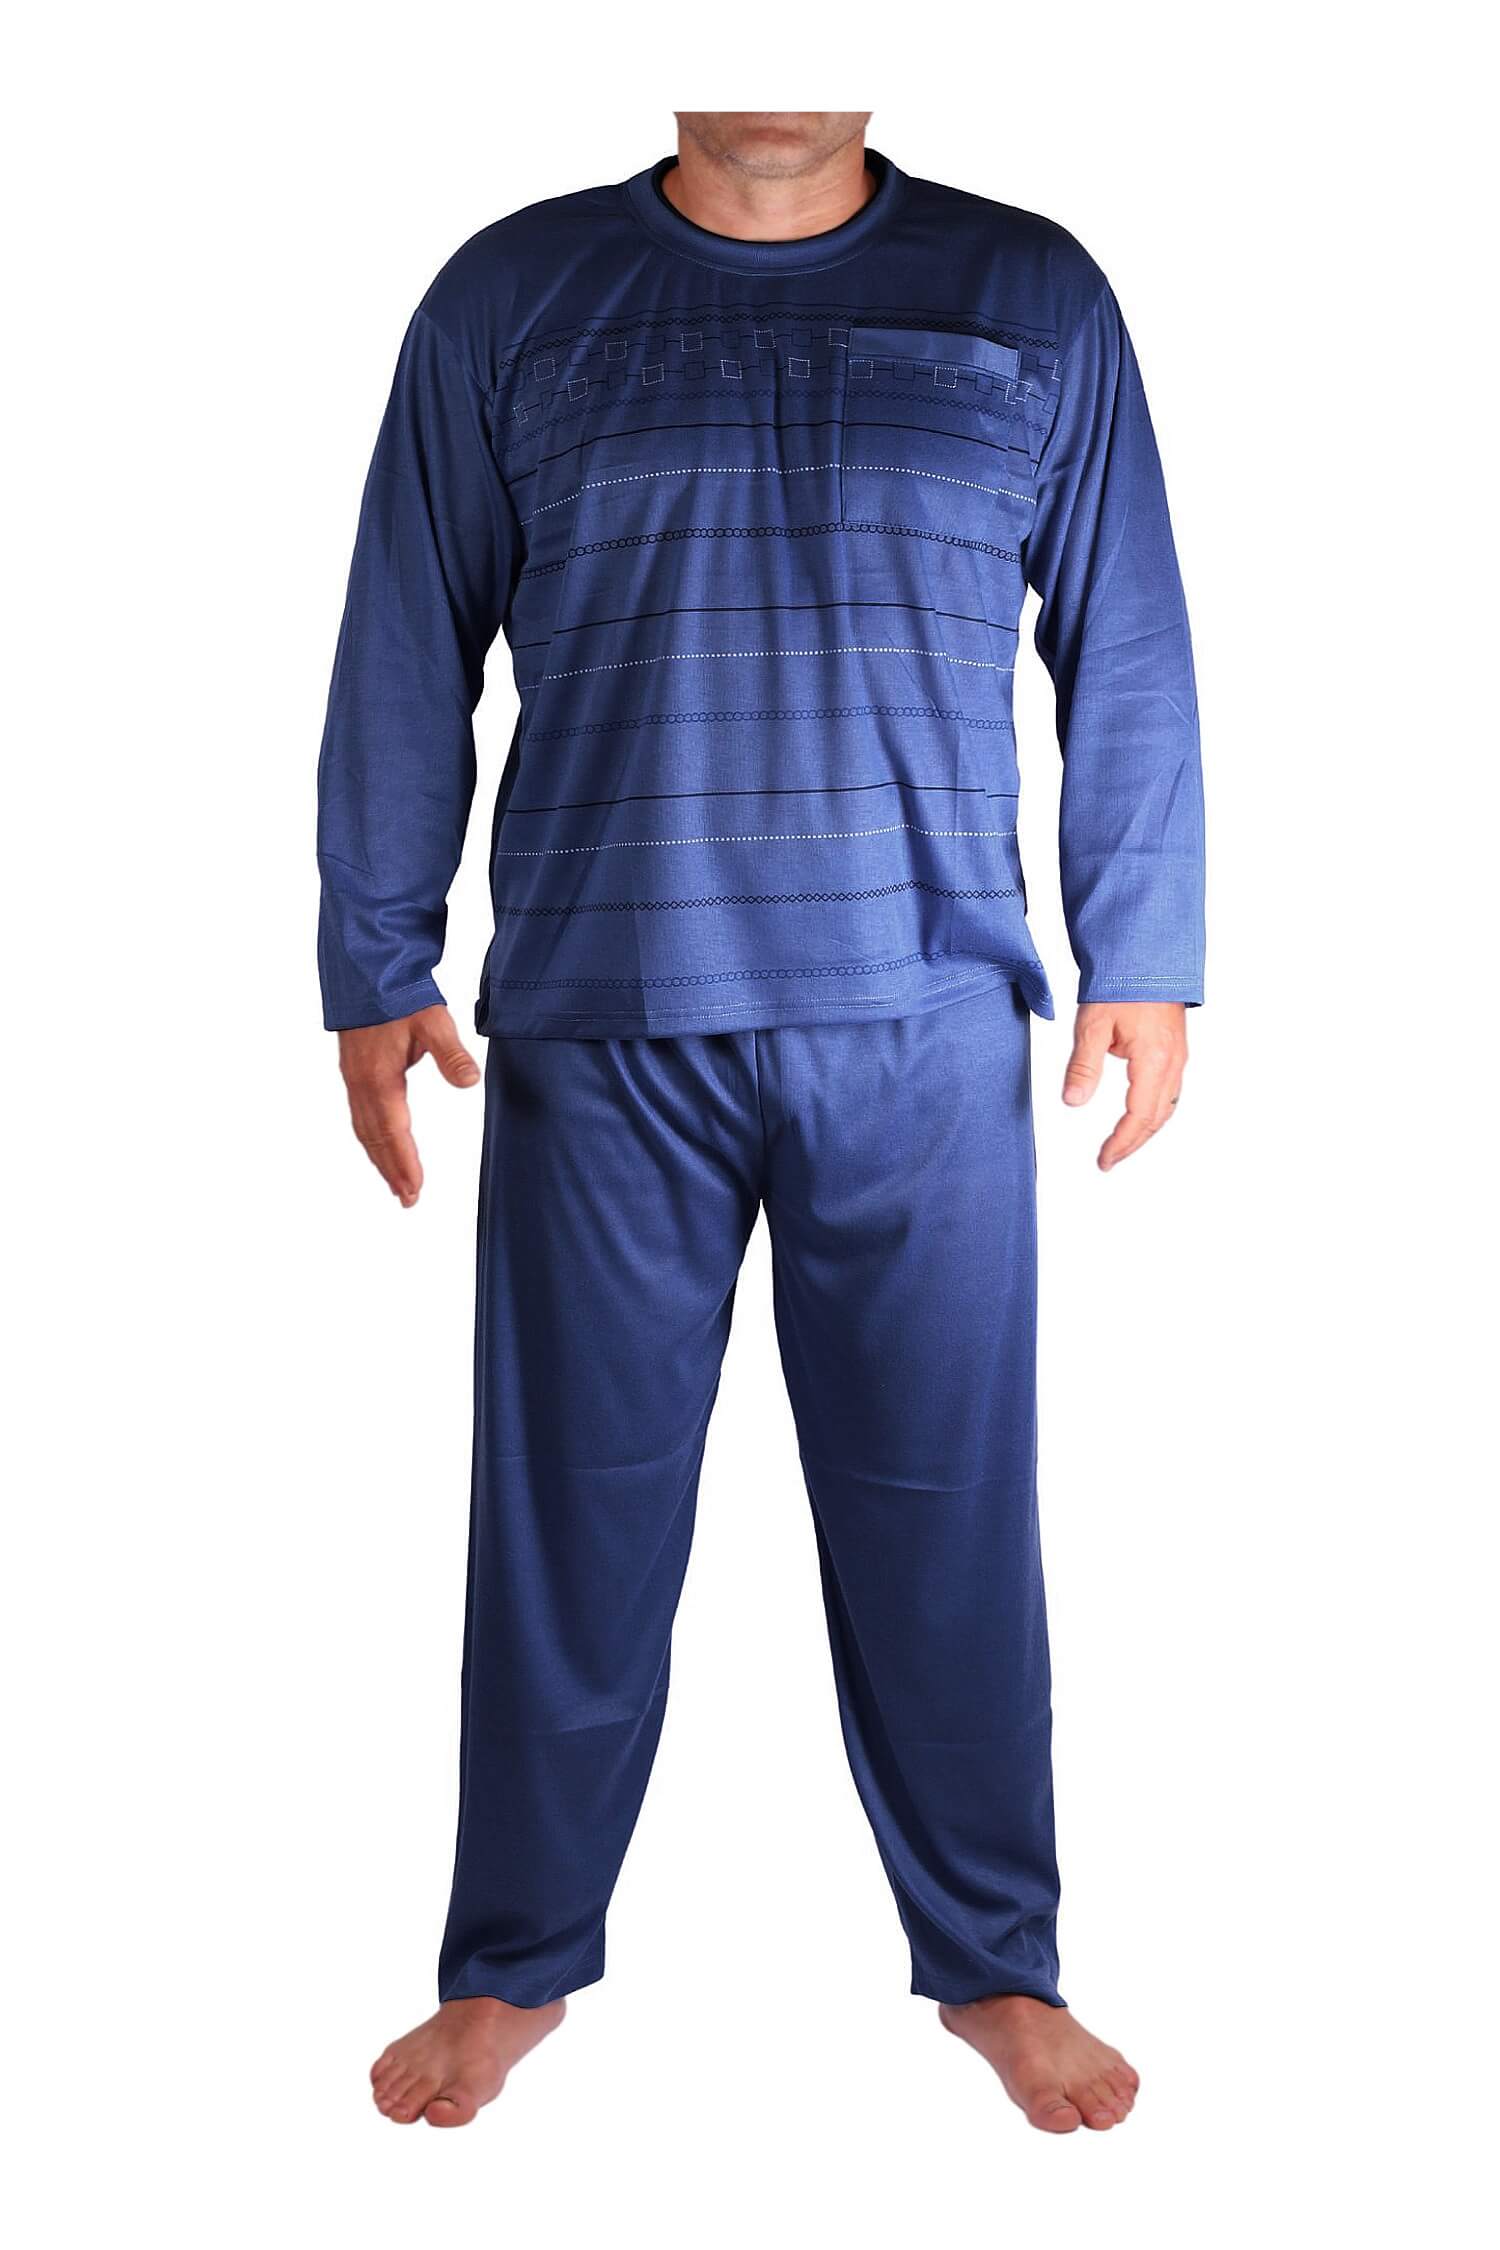 Milan pyžamo pánské dlouhé V1611 3XL tmavě modrá